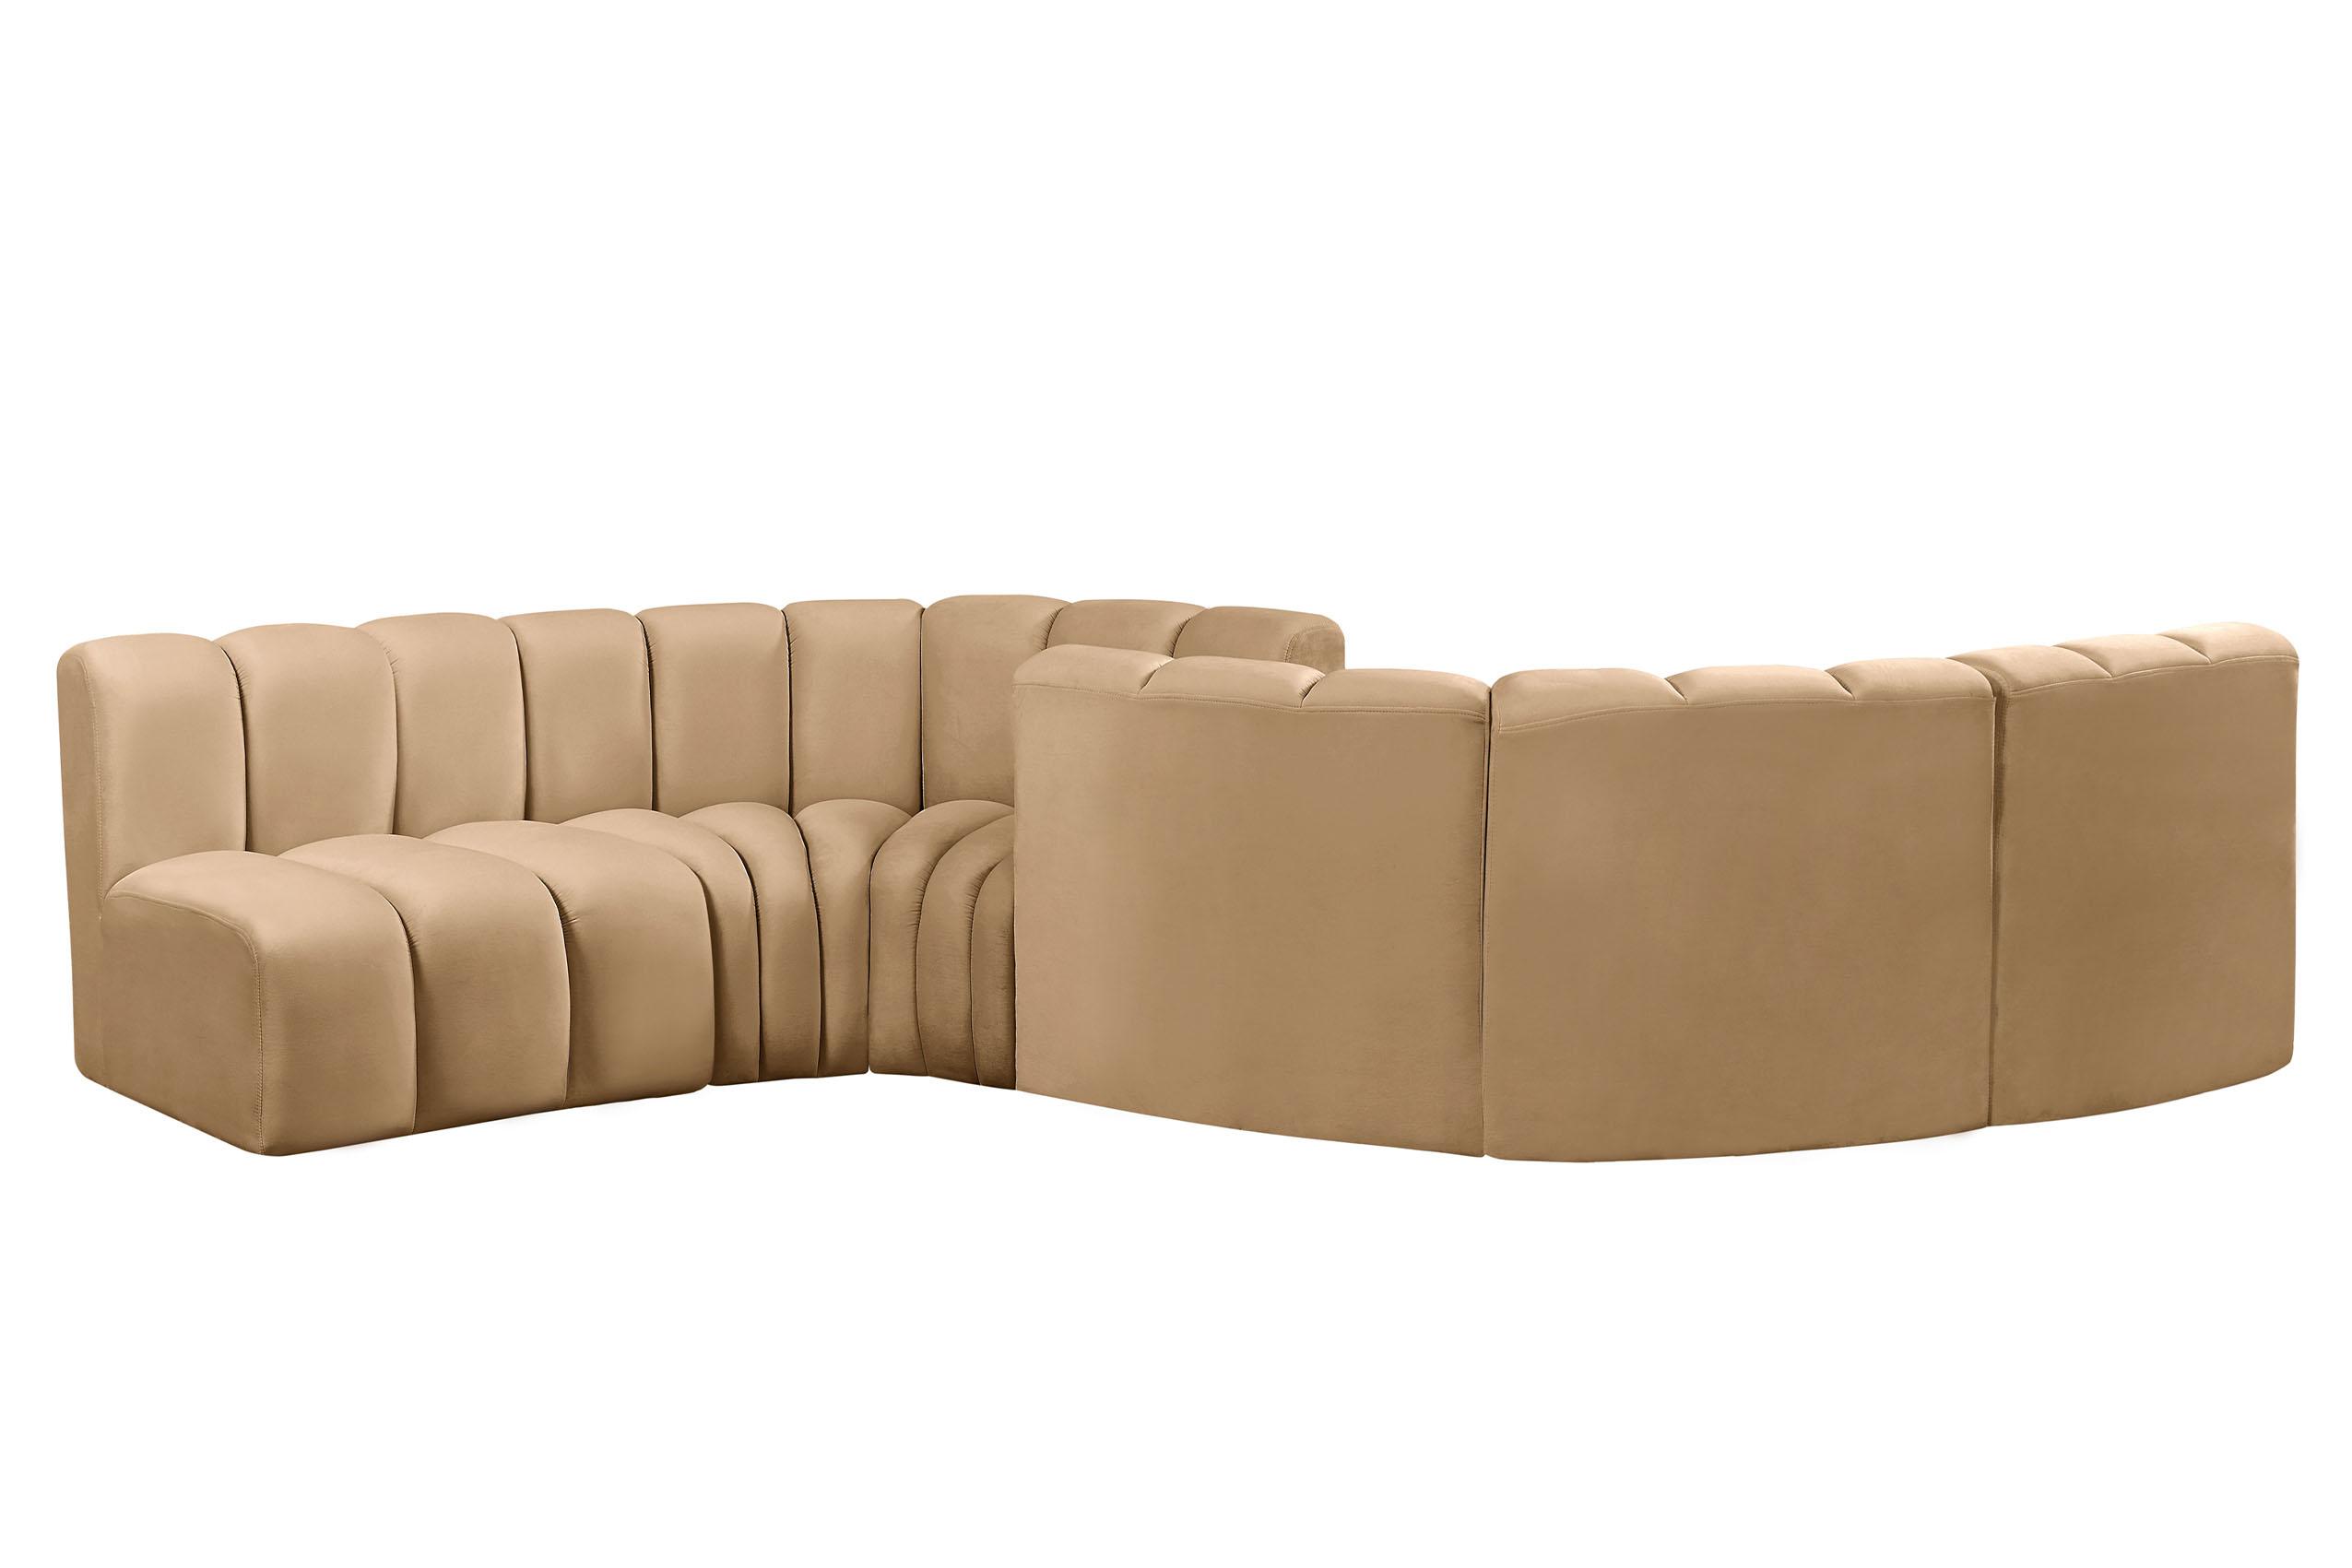 

    
103Camel-S6D Meridian Furniture Modular Sectional Sofa
